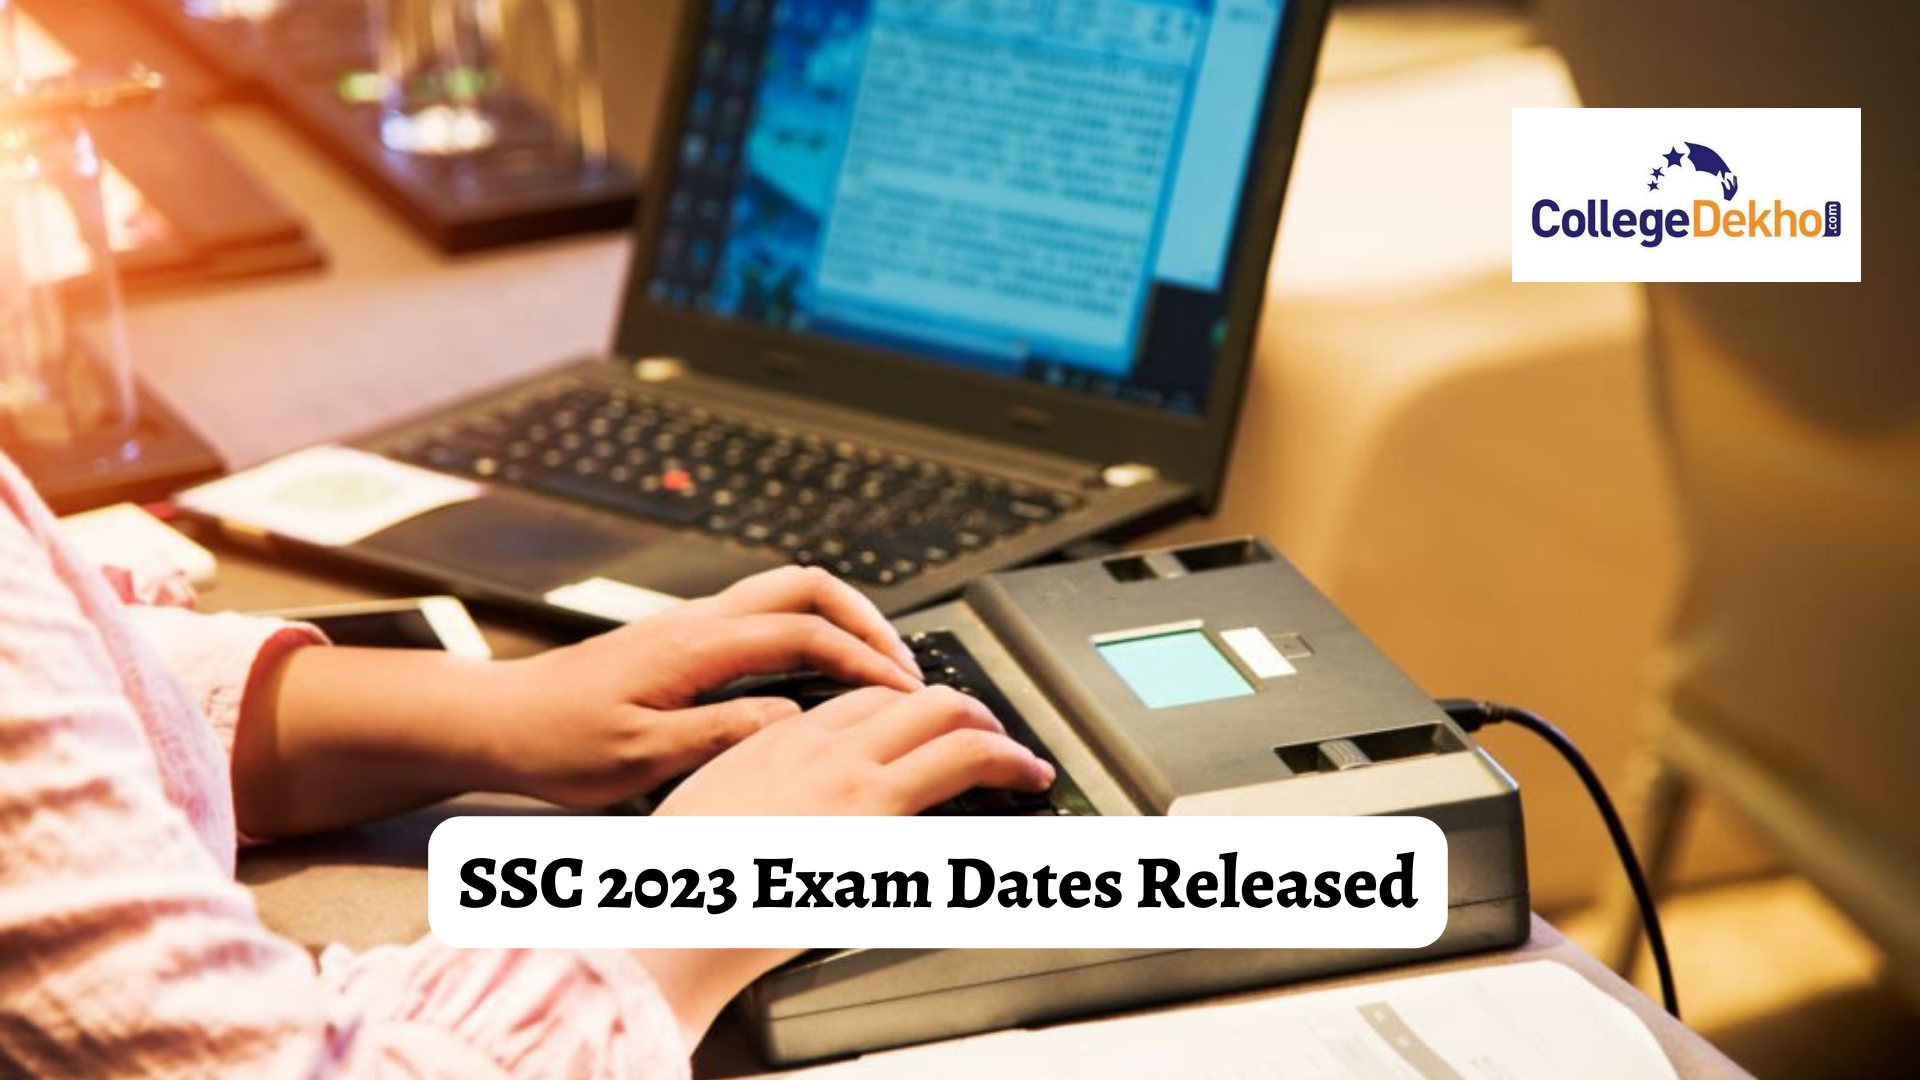 SSC 2023 Exam Calendar Released: Check Exam Dates of CGL, CHSL, GD and Stenographer Exams